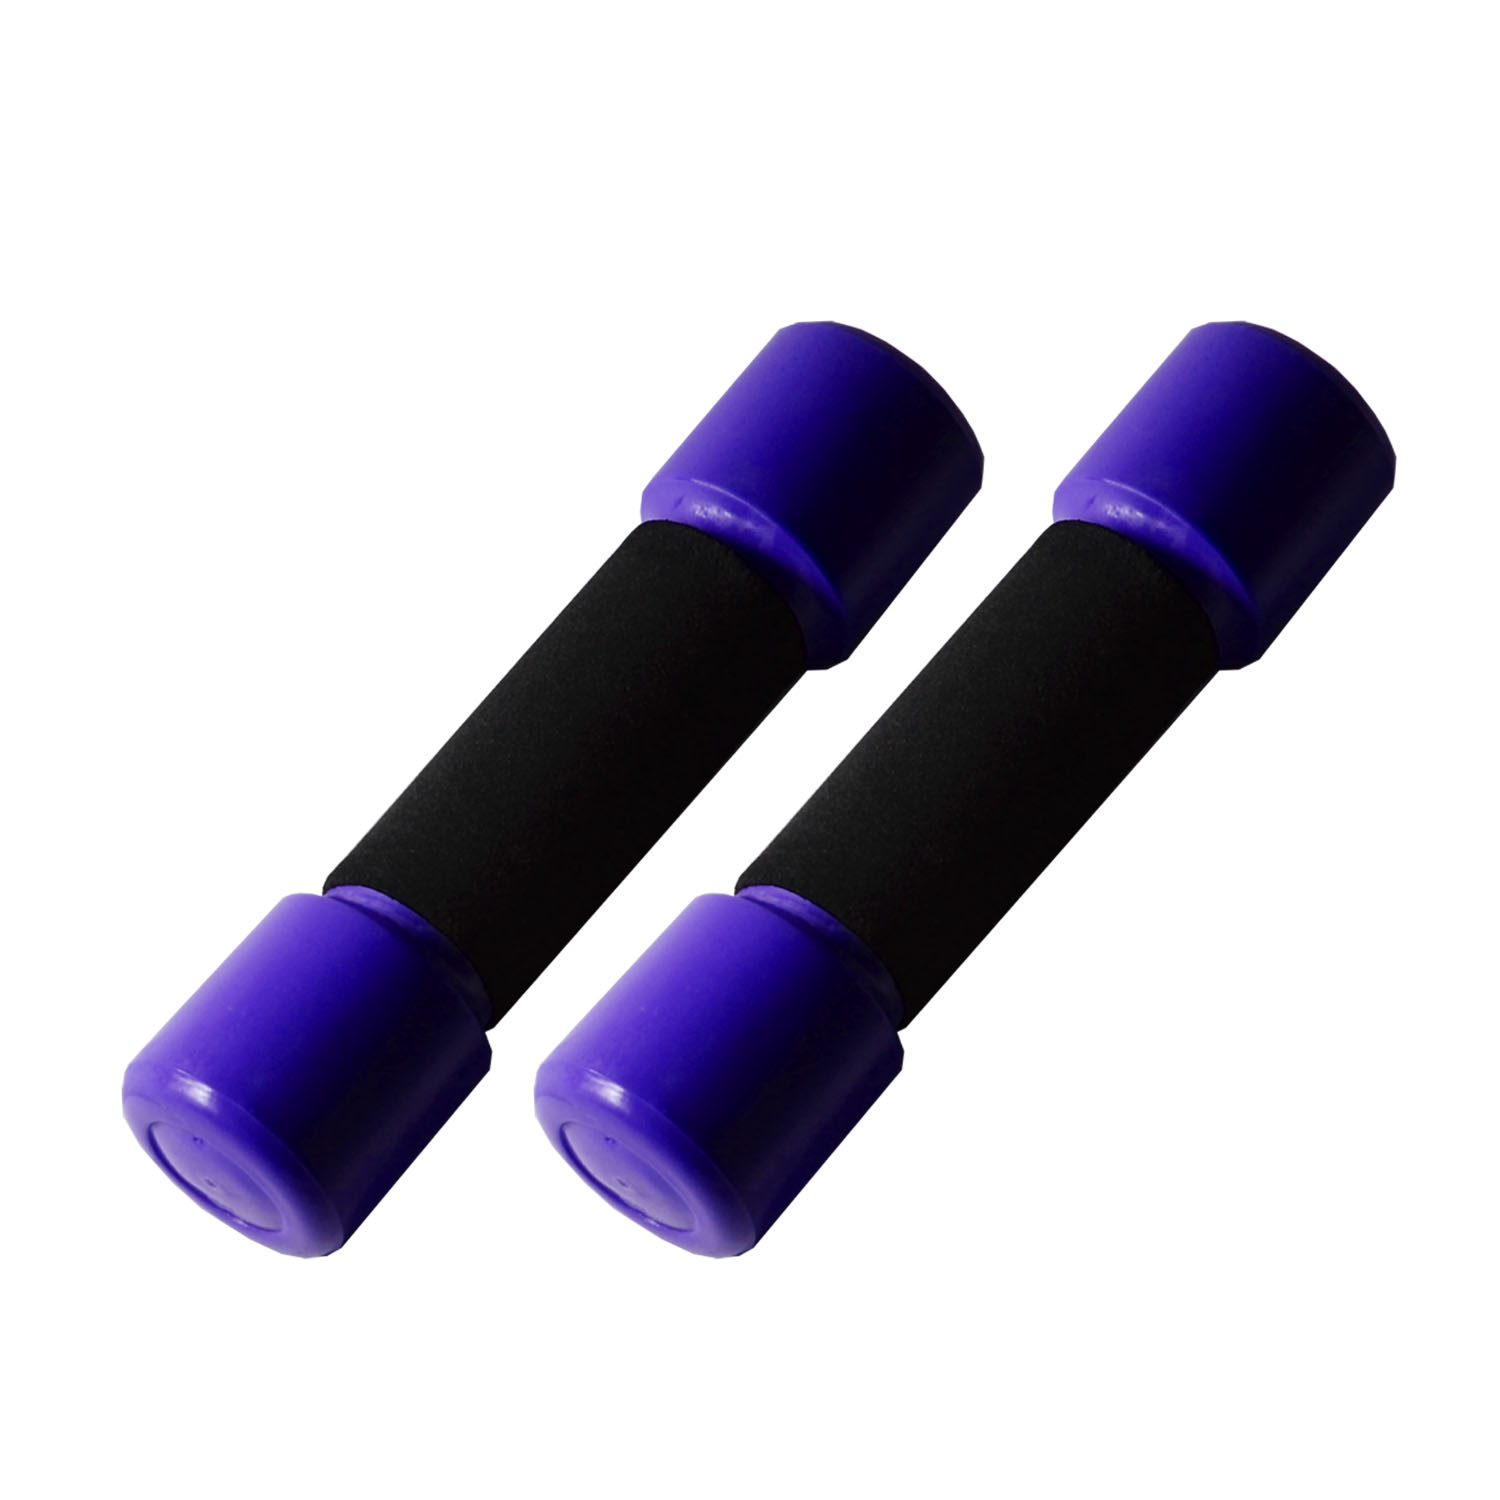 ดัมเบล ที่ยกน้ำหนัก 5 LB (2.5 kg) หุ้มพลาสติก ดรัมเบล - สีม่วง 1 คู่ / Pair of Dumbbell 5 LB (2.5 kg) - Purple